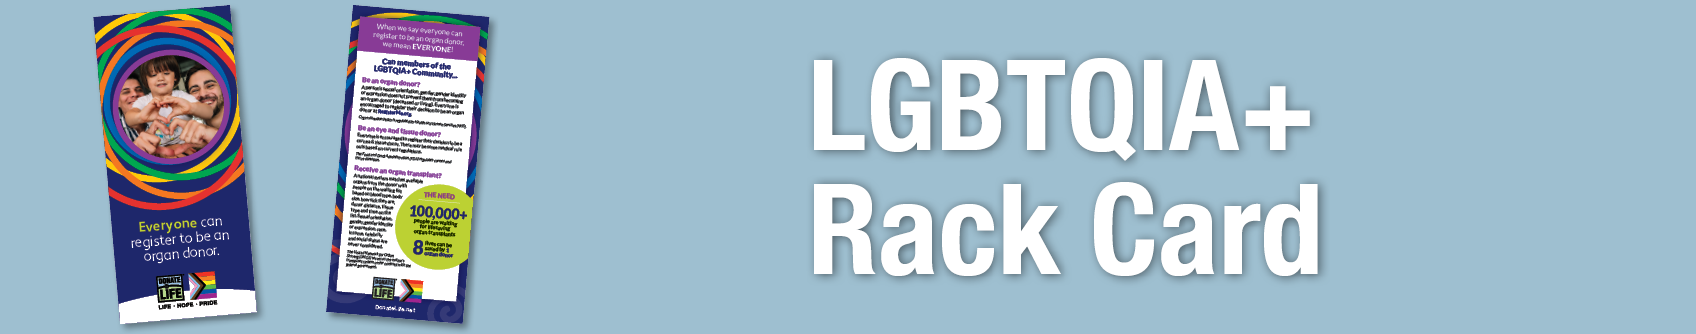 DLA LGBTQ+ Rack Card